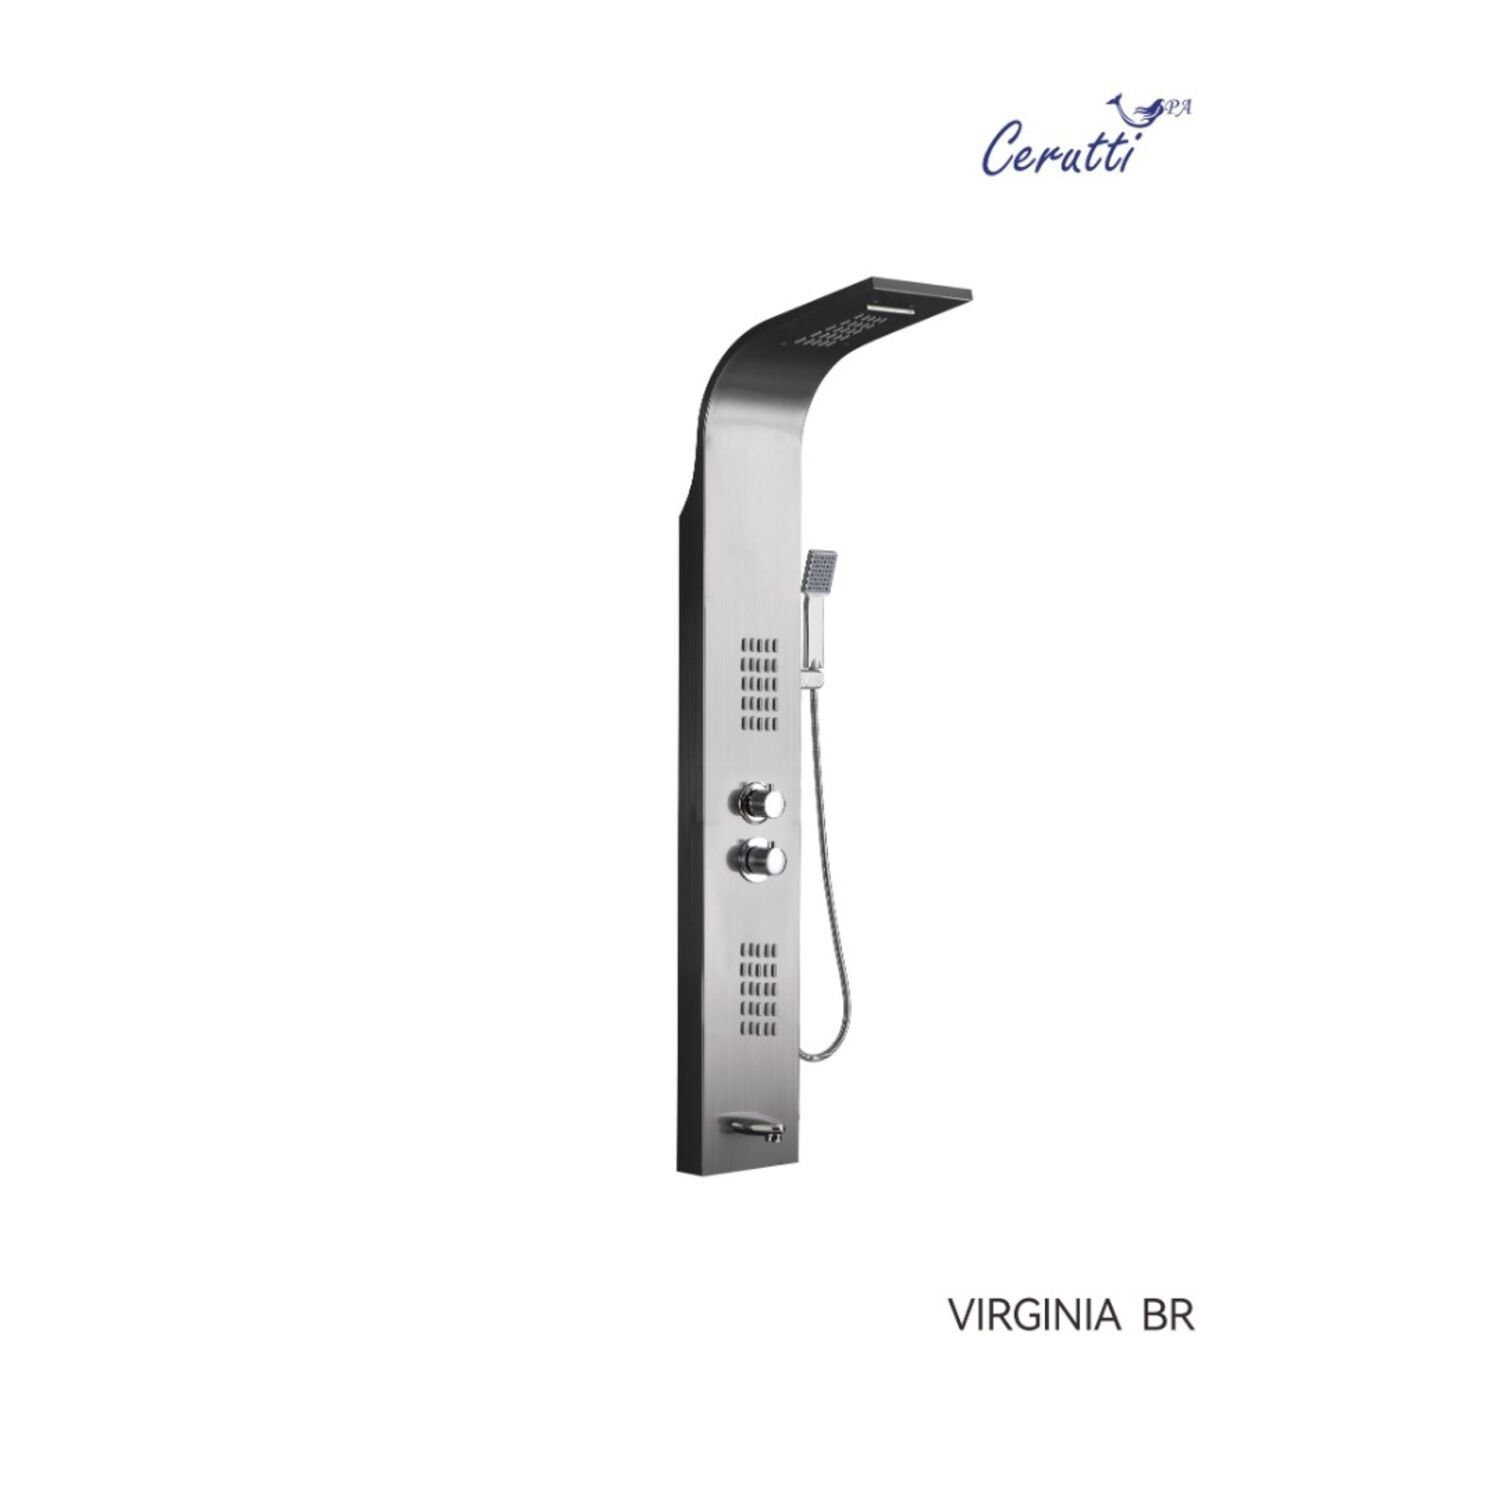 Душевая панель CeruttiSPA Virginia BR CT9983, с гидромассажем, цвет матовая нержавеющая сталь